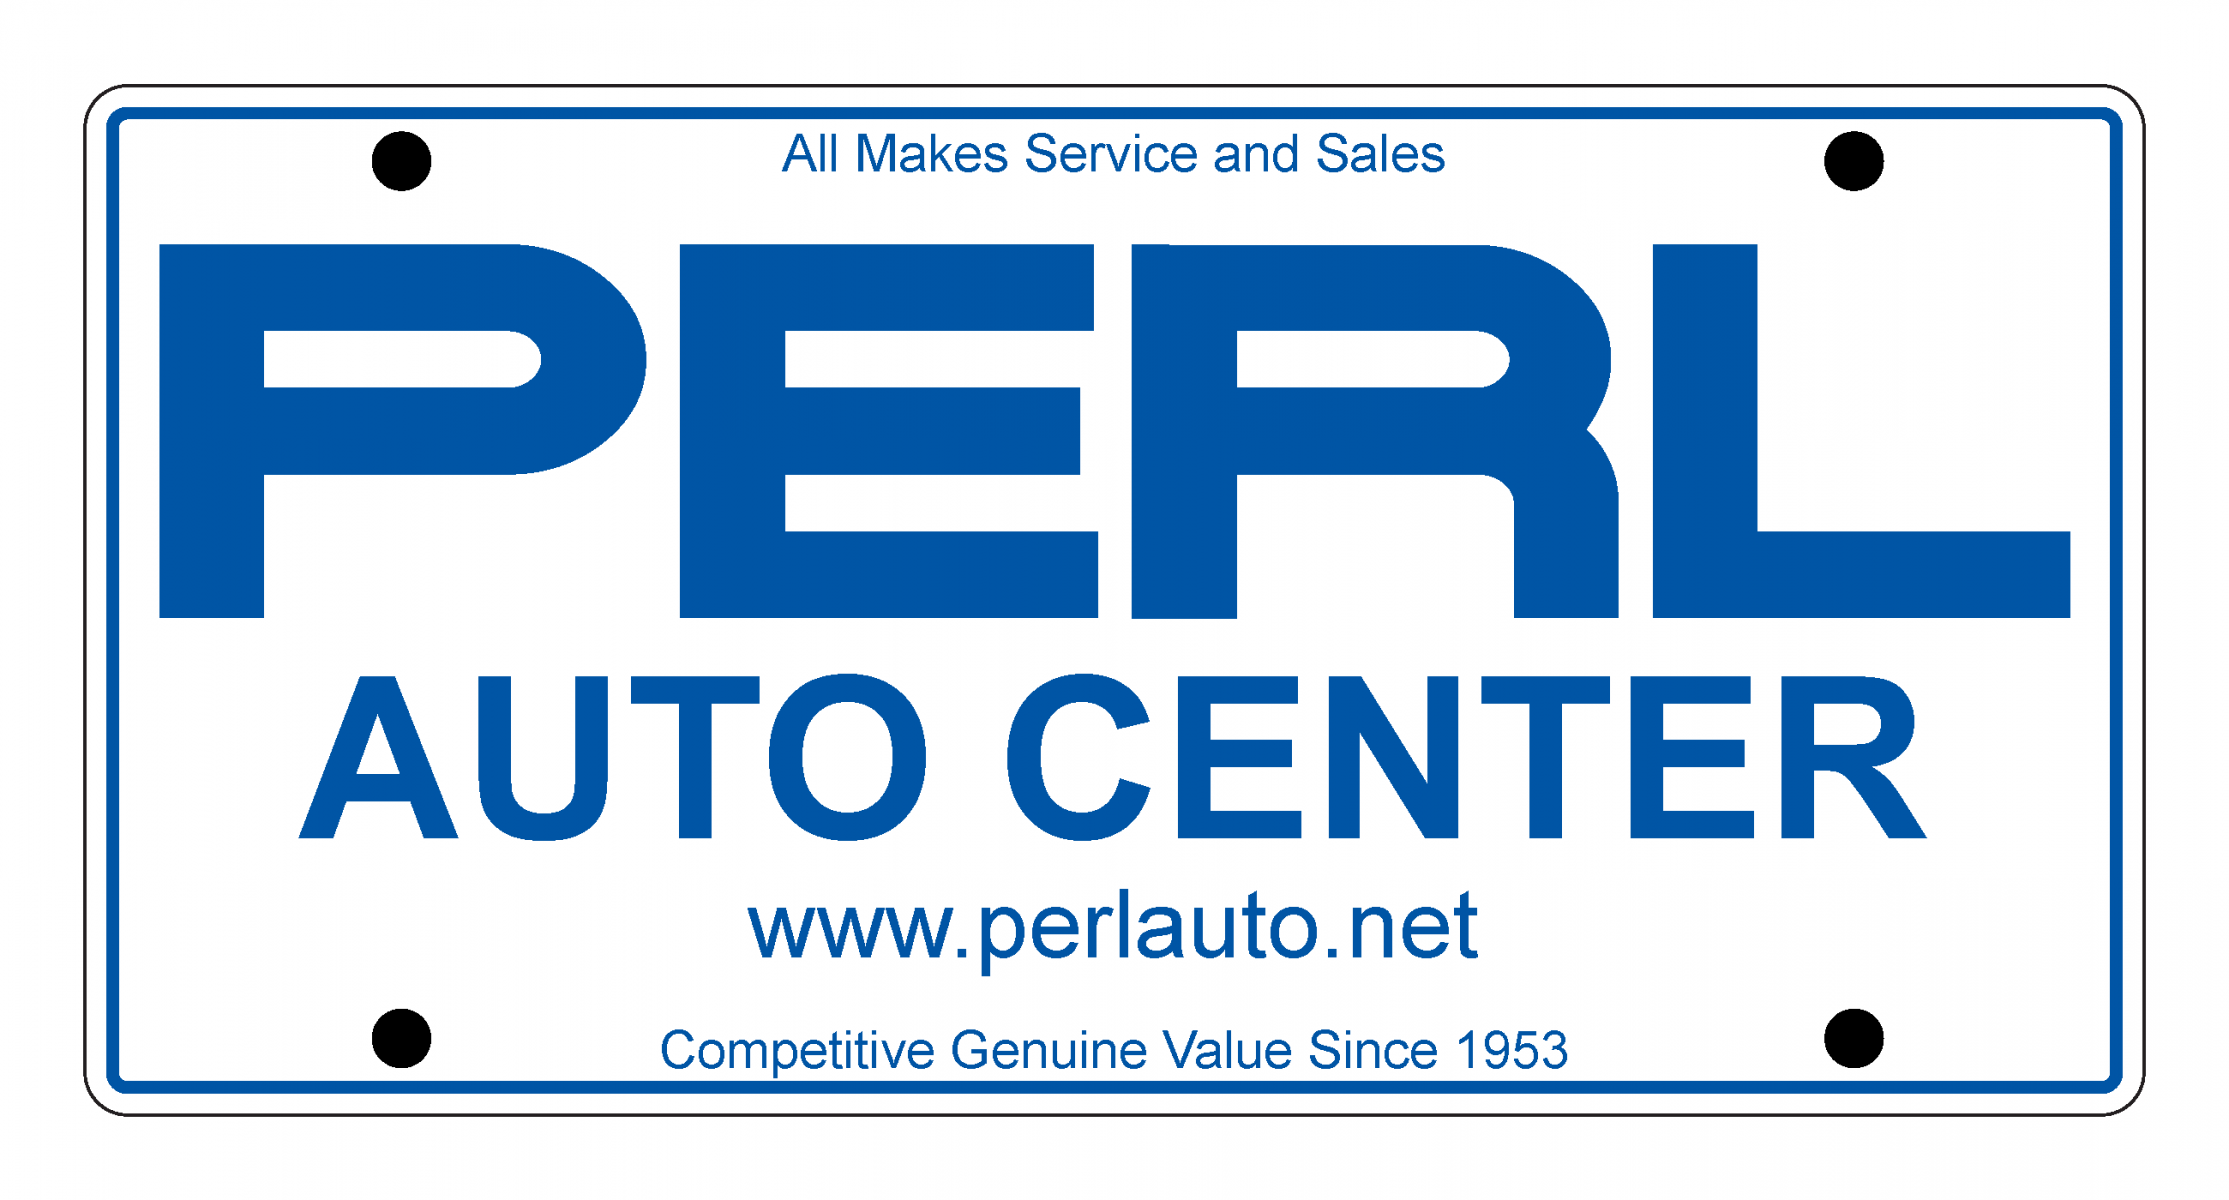 Perl Auto Center's Image